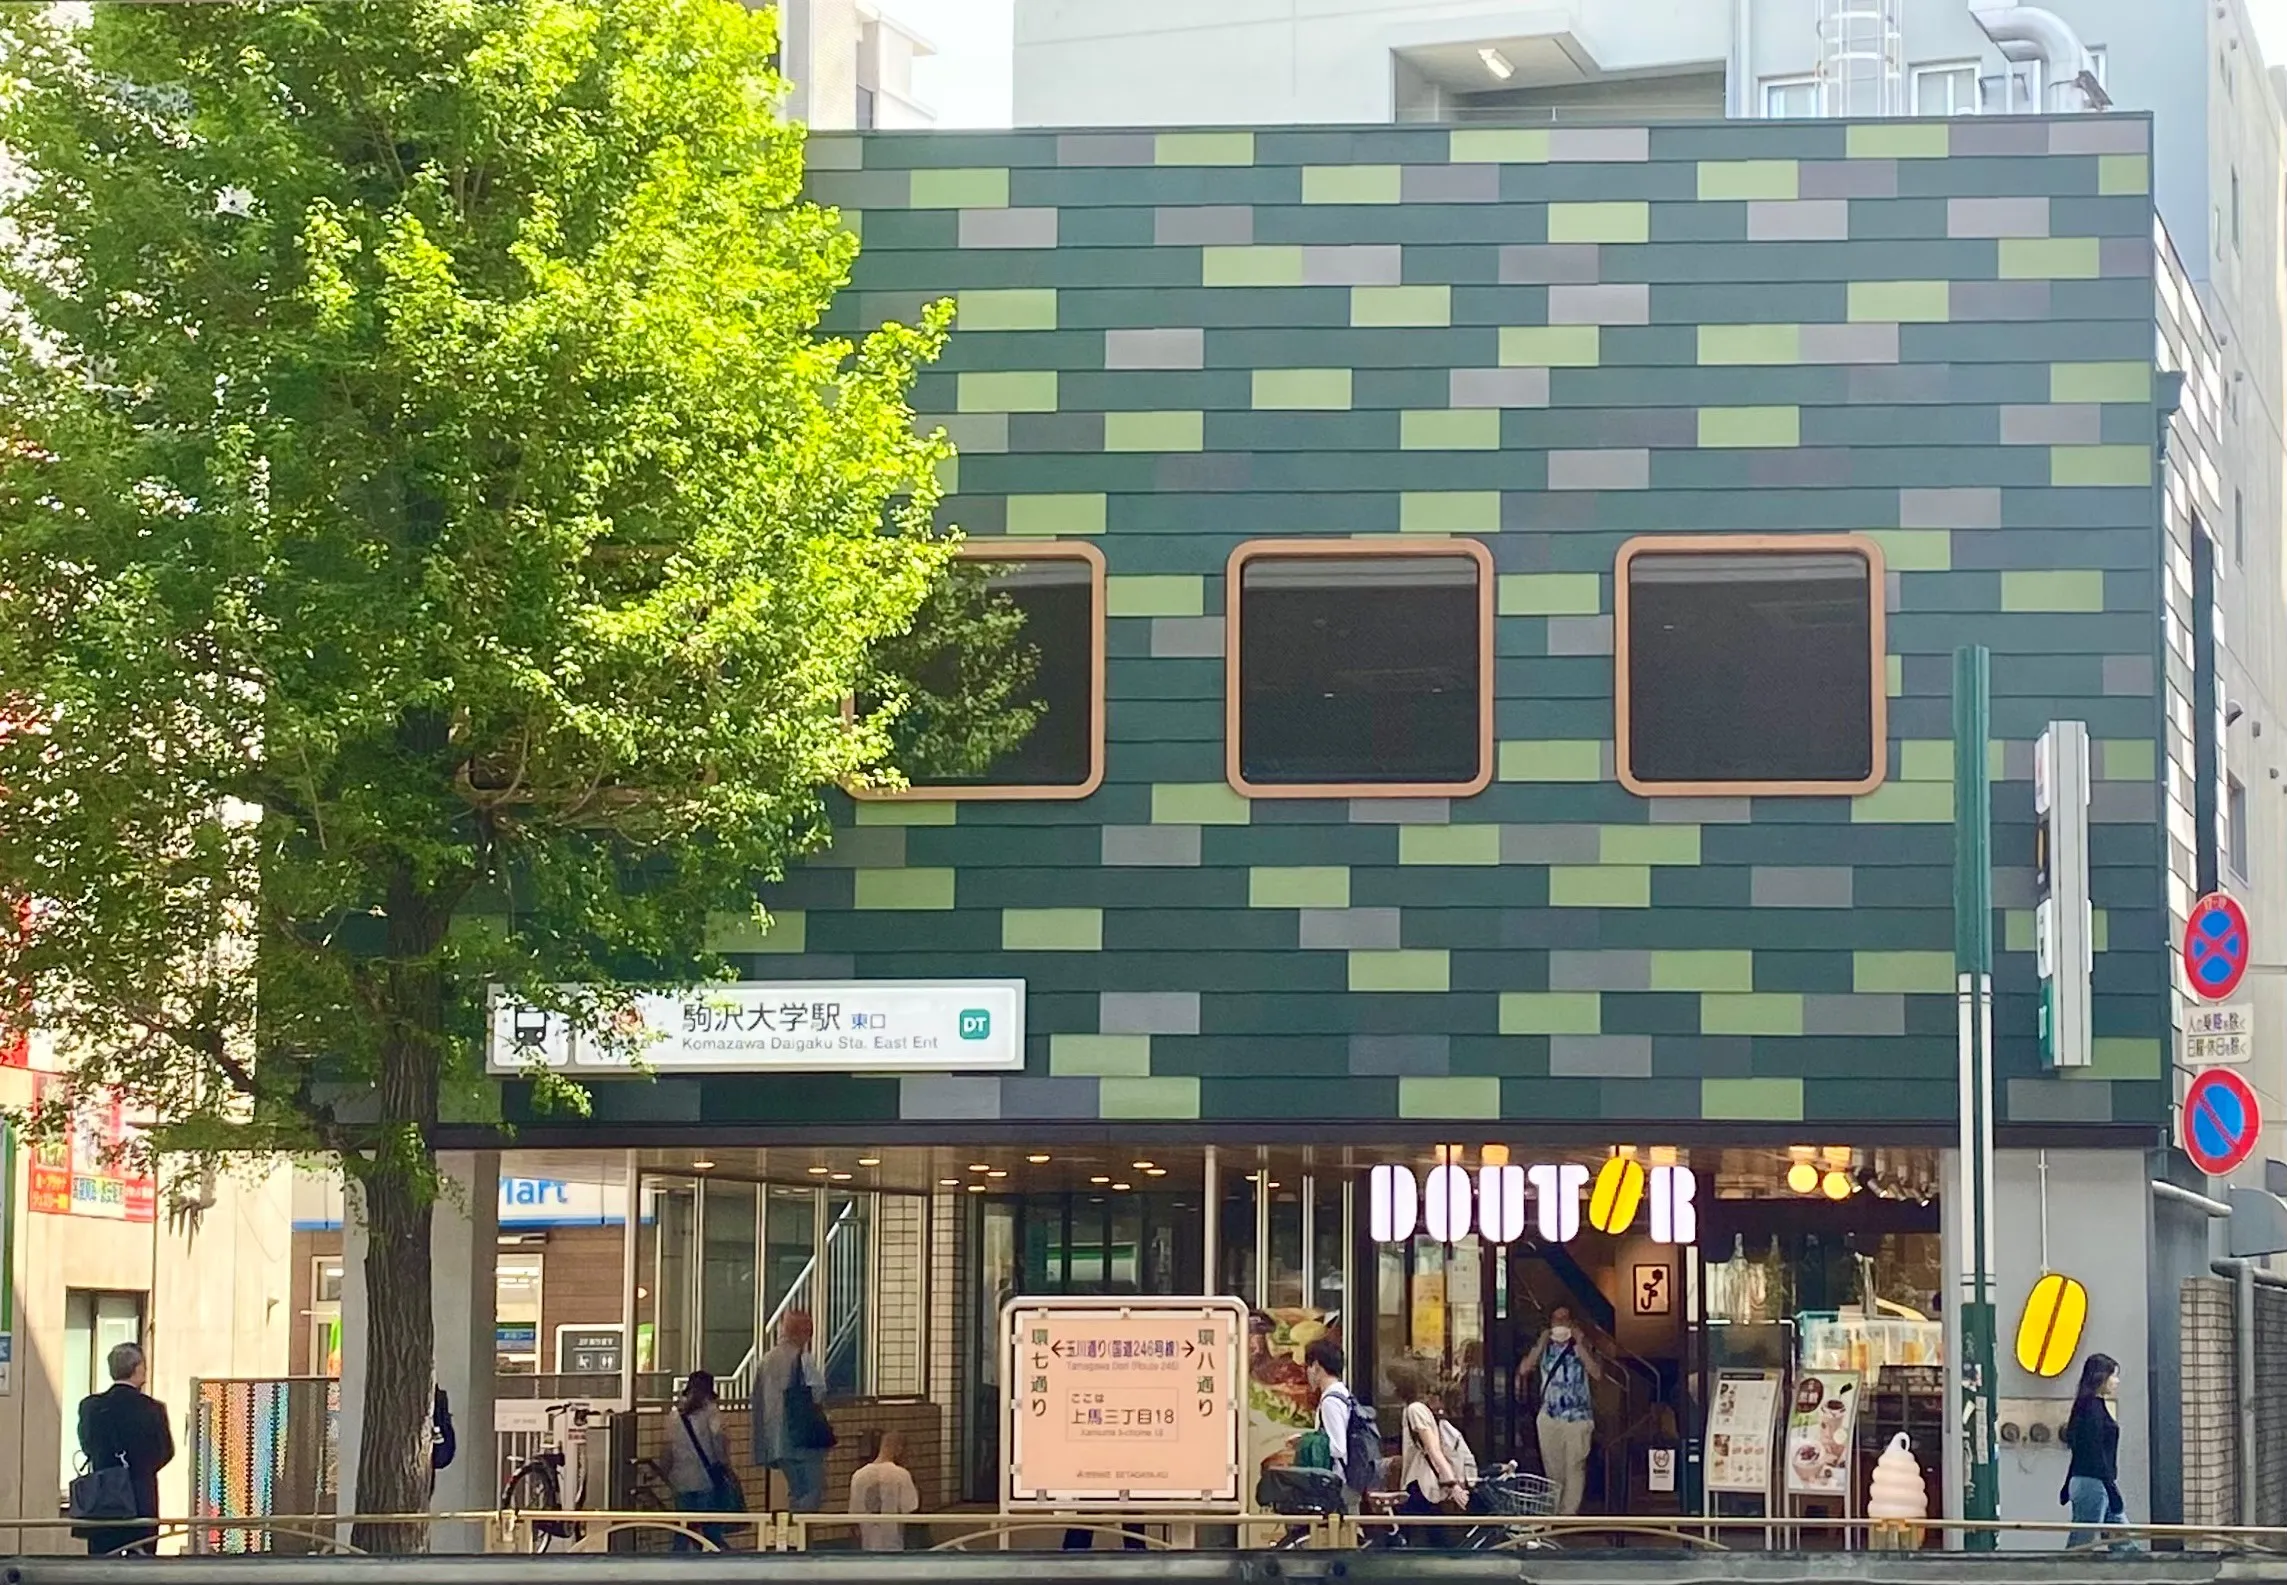 東急田園都市線 駒沢大学駅ビル耐震補強他工事のサムネイル画像です